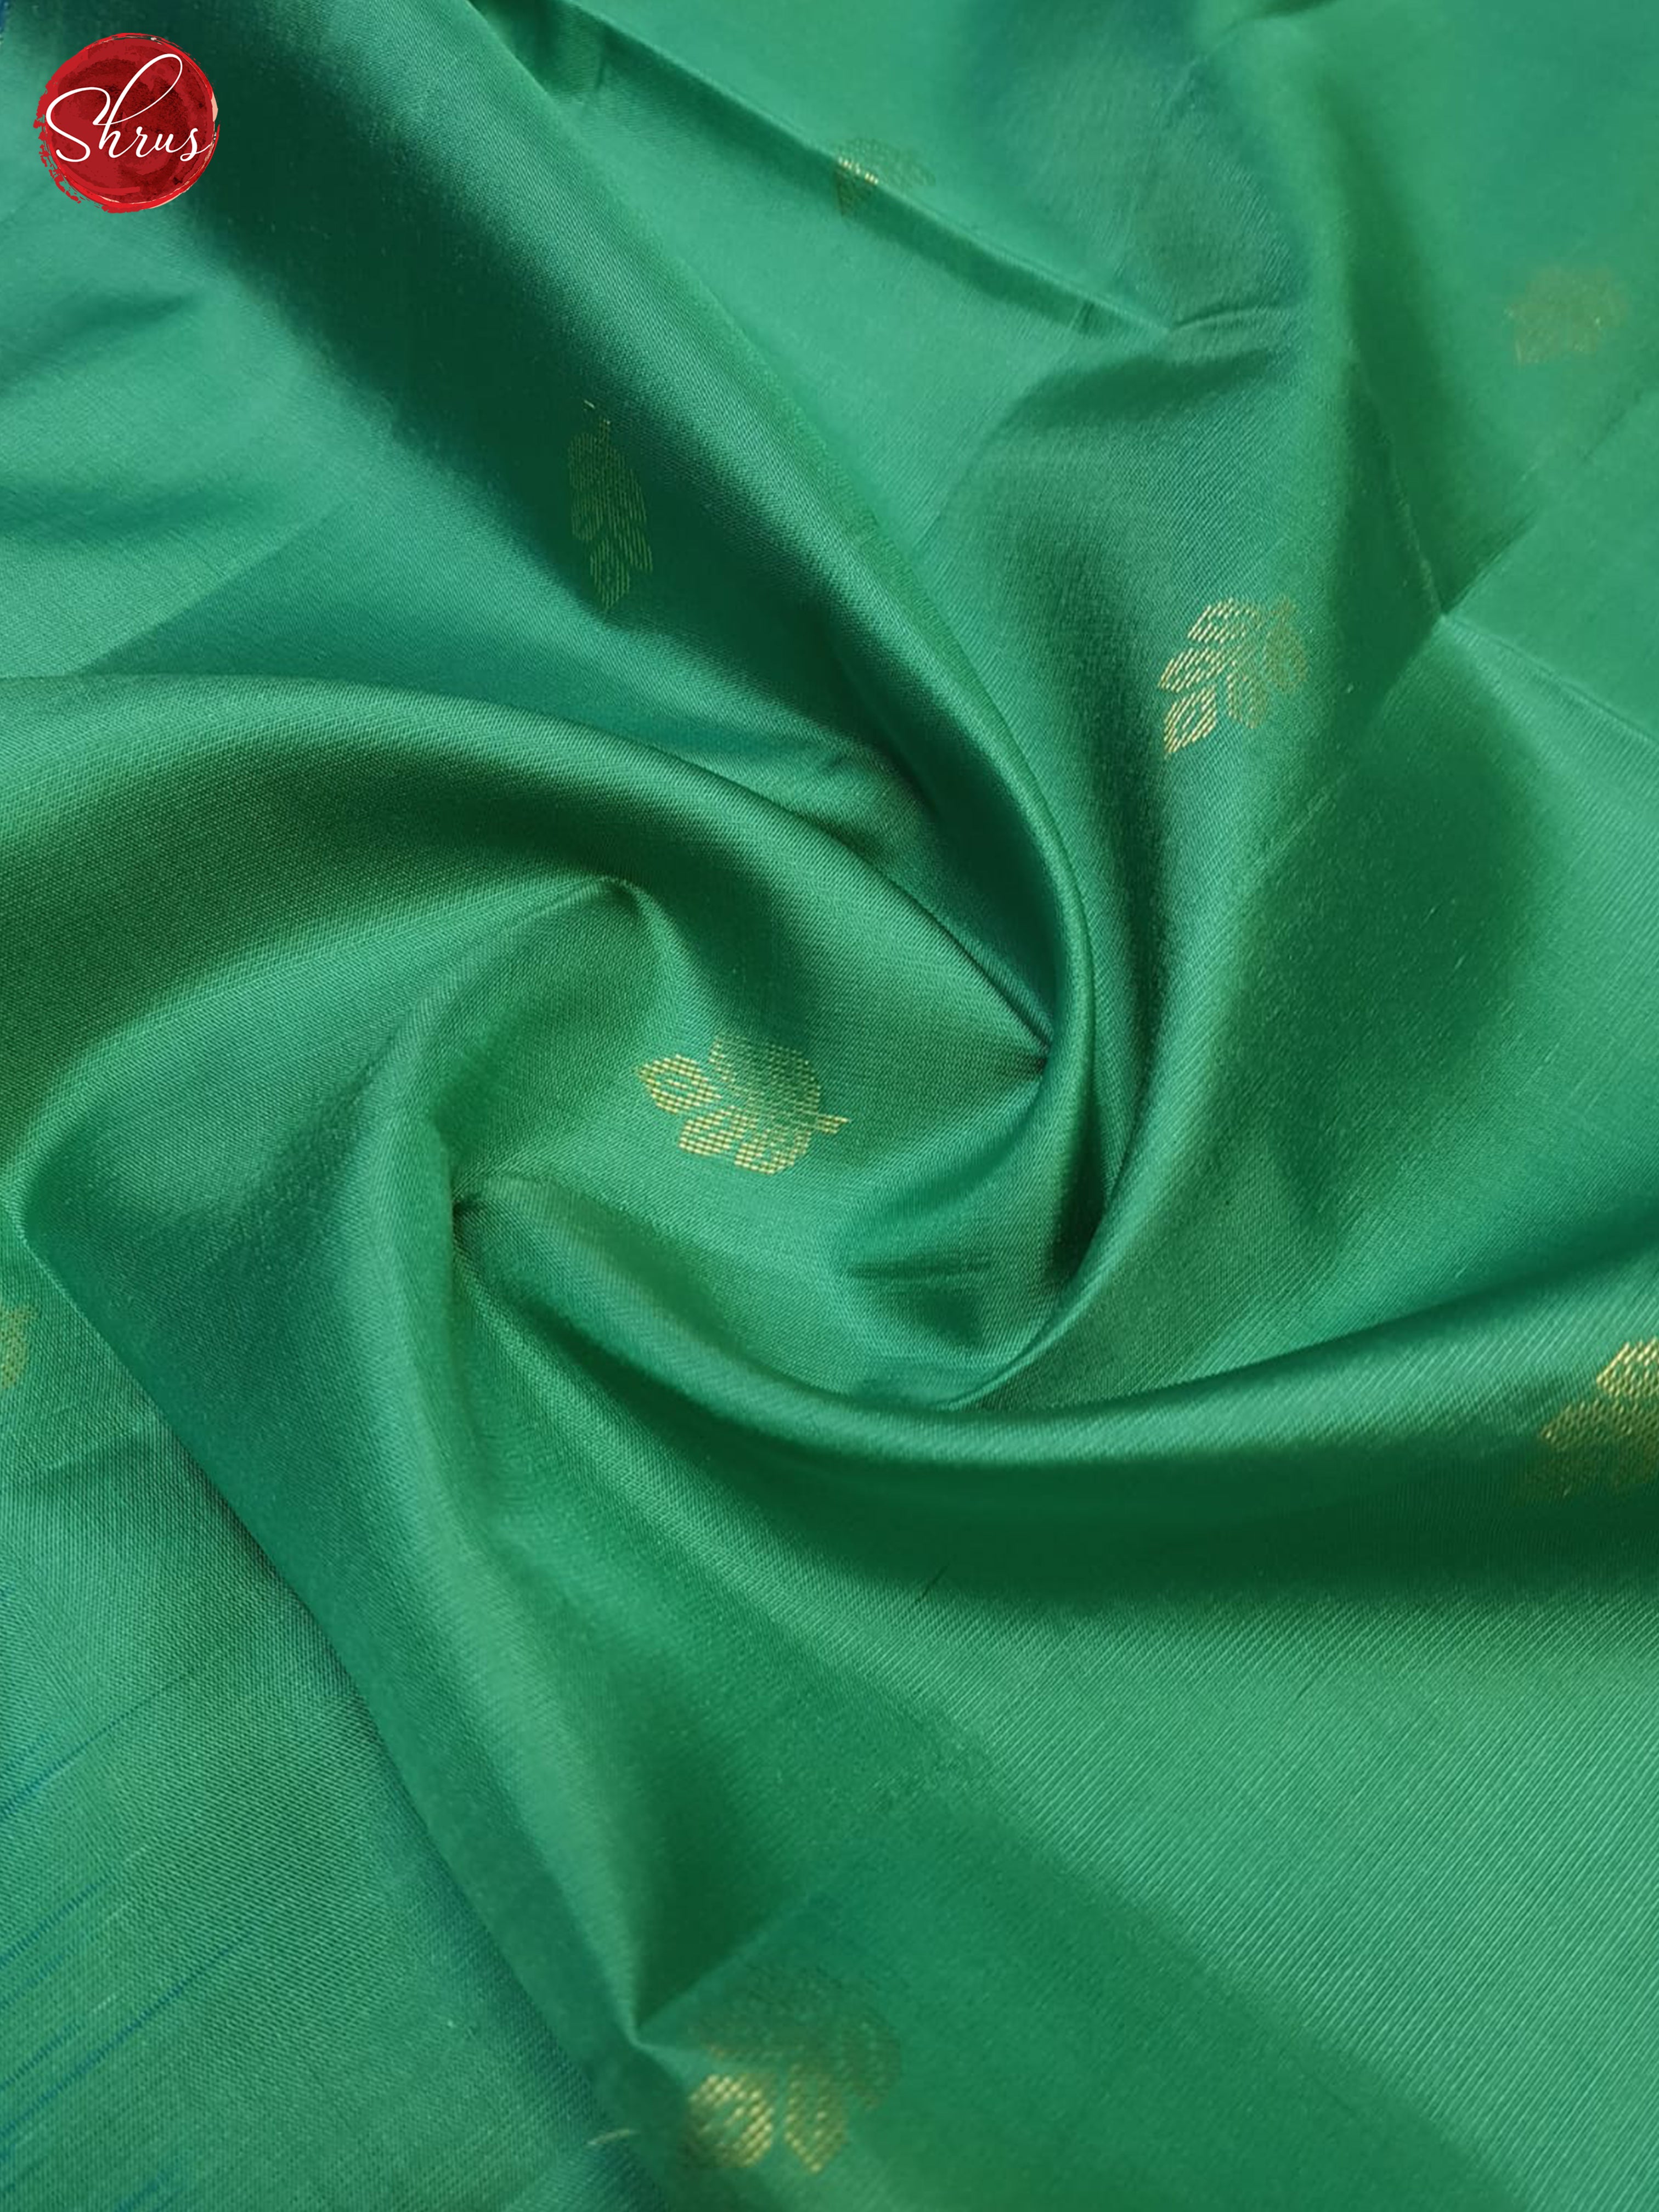 Green & Blue  - Soft Silk Saree - Shop on ShrusEternity.com